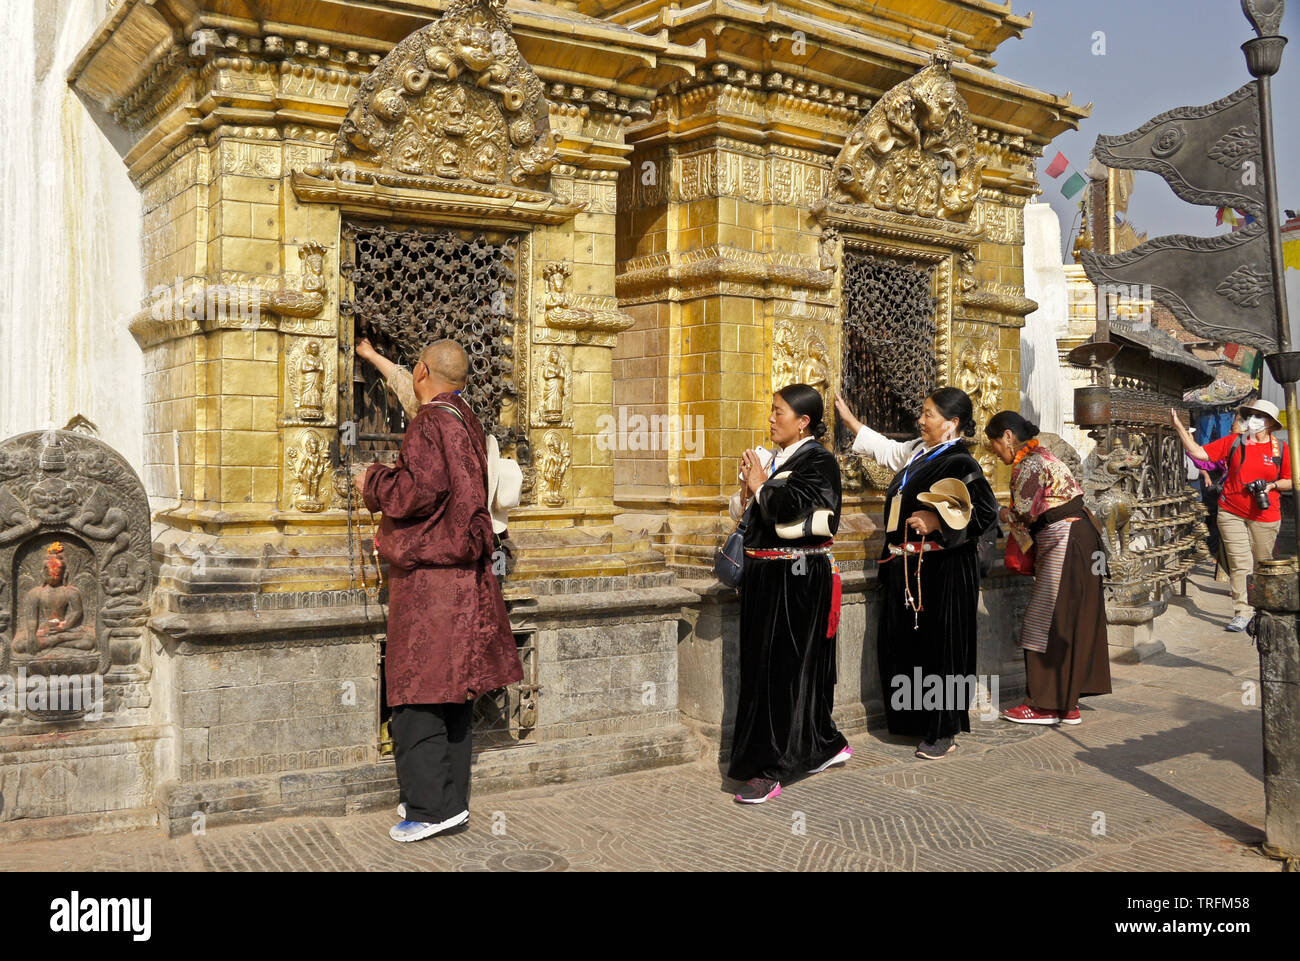 Der tibetischen Pilger in traditioneller Kleidung Anbetung an vergoldeten Nischen der großen buddhistischen Tempel Swayambhunath Stupa in Kathmandu Kathmandu Tal, N Stockfoto